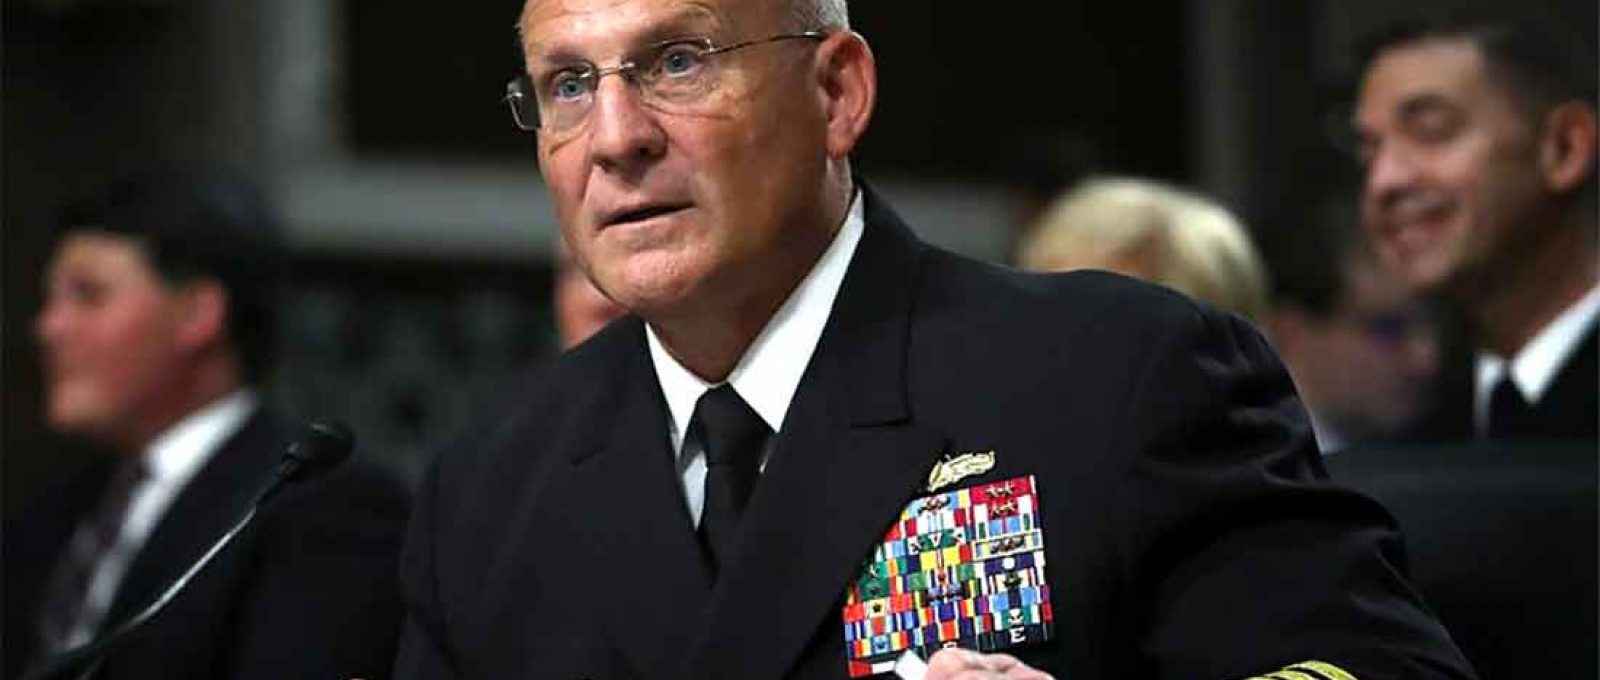 O então vice-almirante da U.S. Navy, Michael M. Gilday, testemunha perante o Comitê de Serviços Armados do Senado dos EUA em 31 de julho de 2019 em Washington, D.C. (Foto: Win McNamee/Getty).